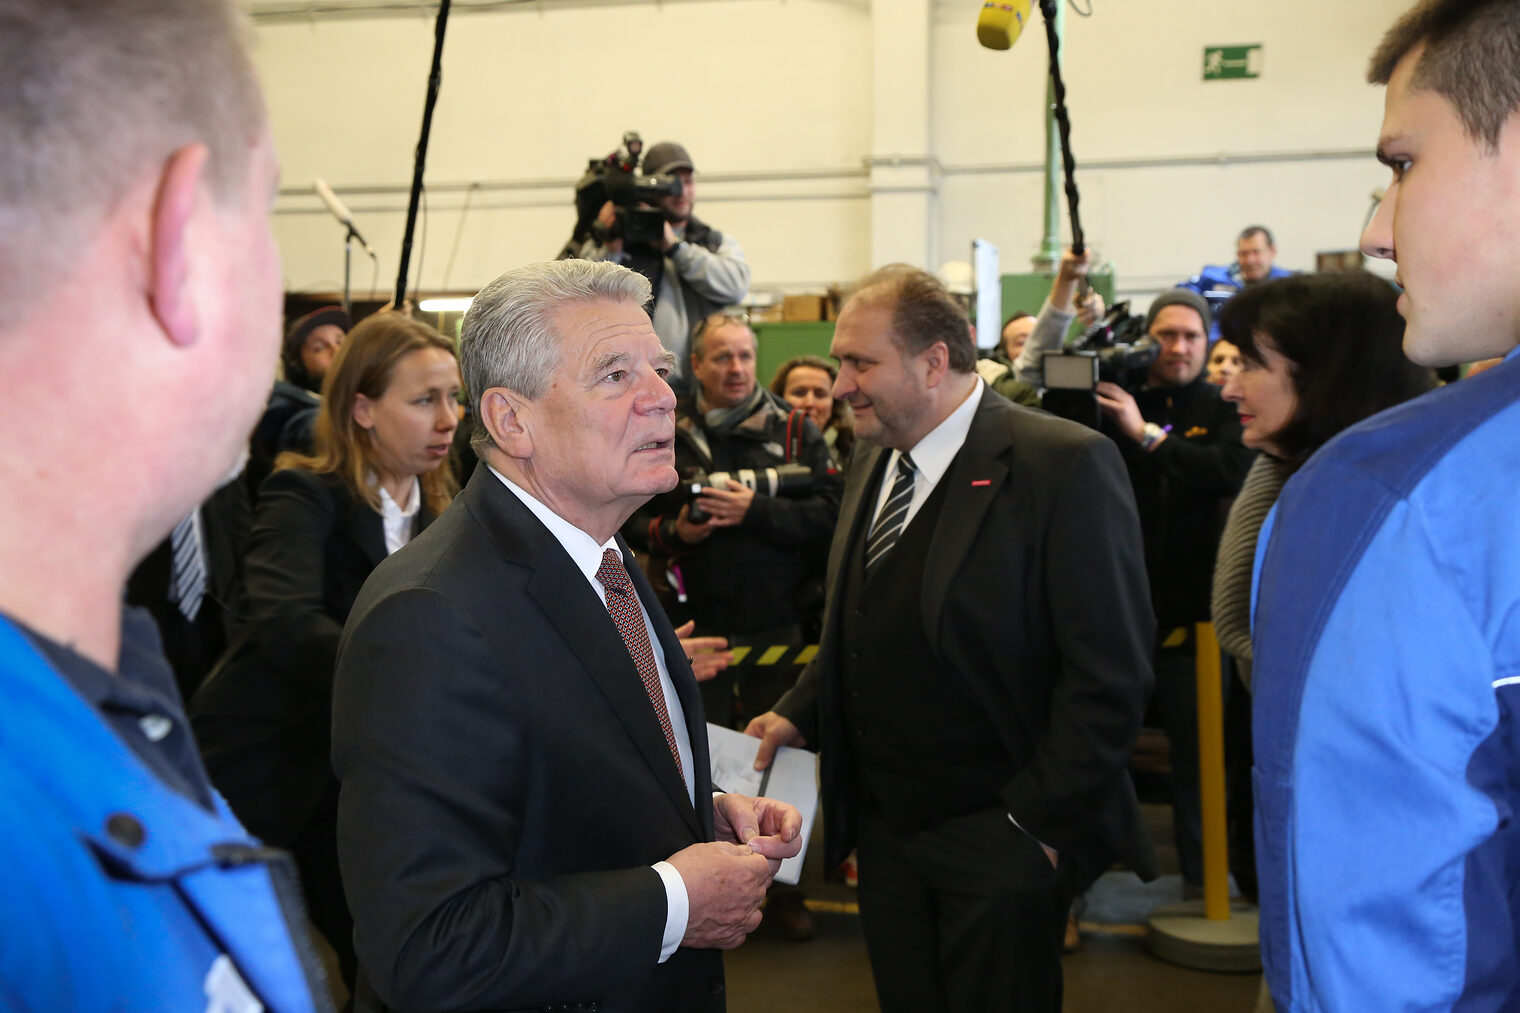 Bundespräsident Joachim Gauck besucht das Handwerk 1